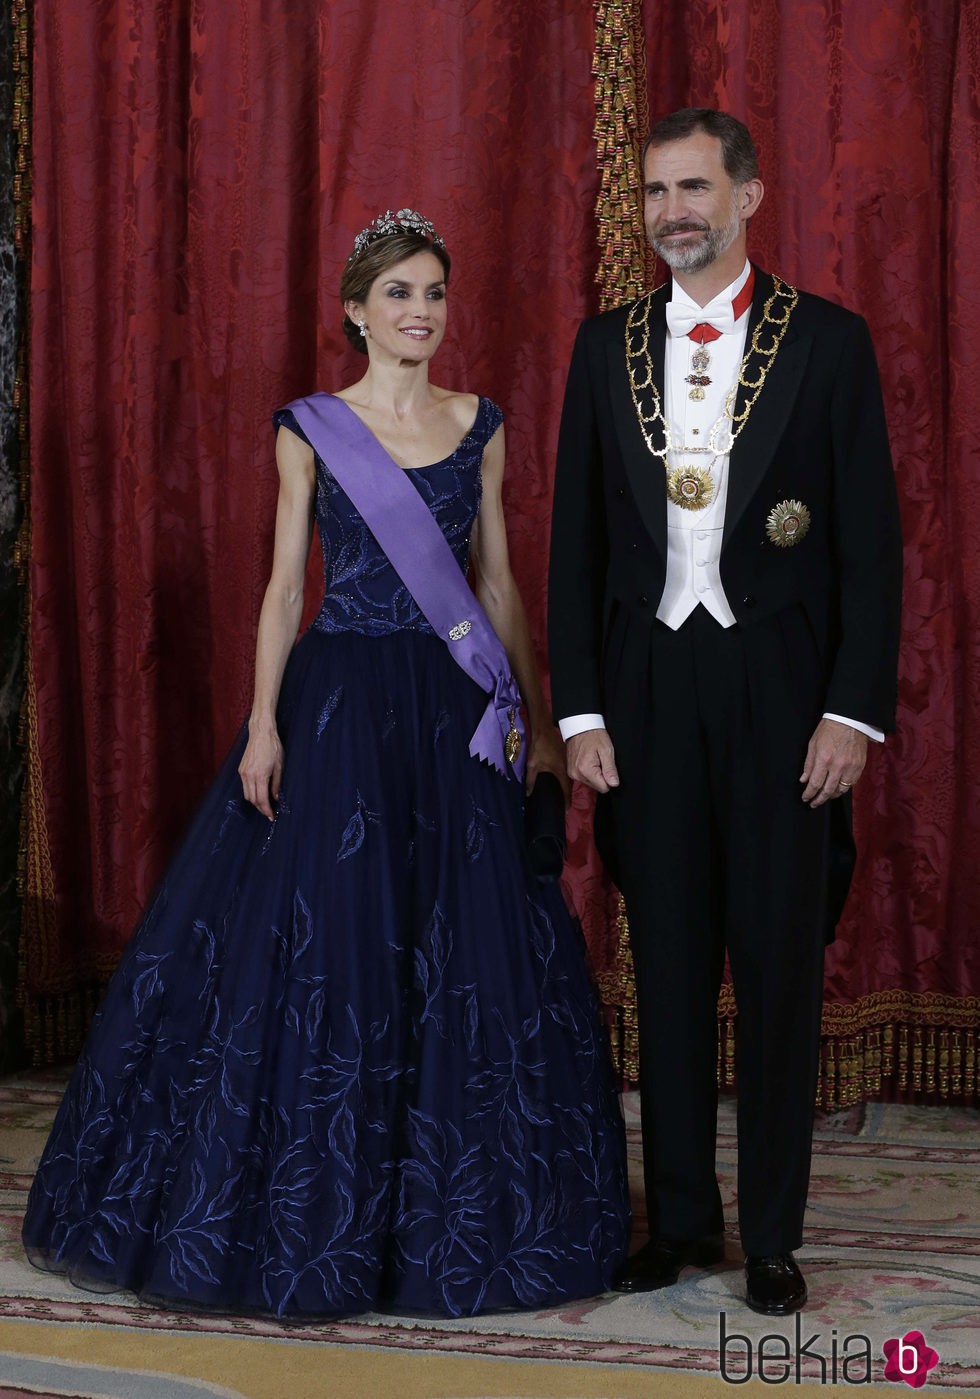 Los Reyes Felipe y Letizia en la cena de gala en honor al presidente de Perú y su esposa